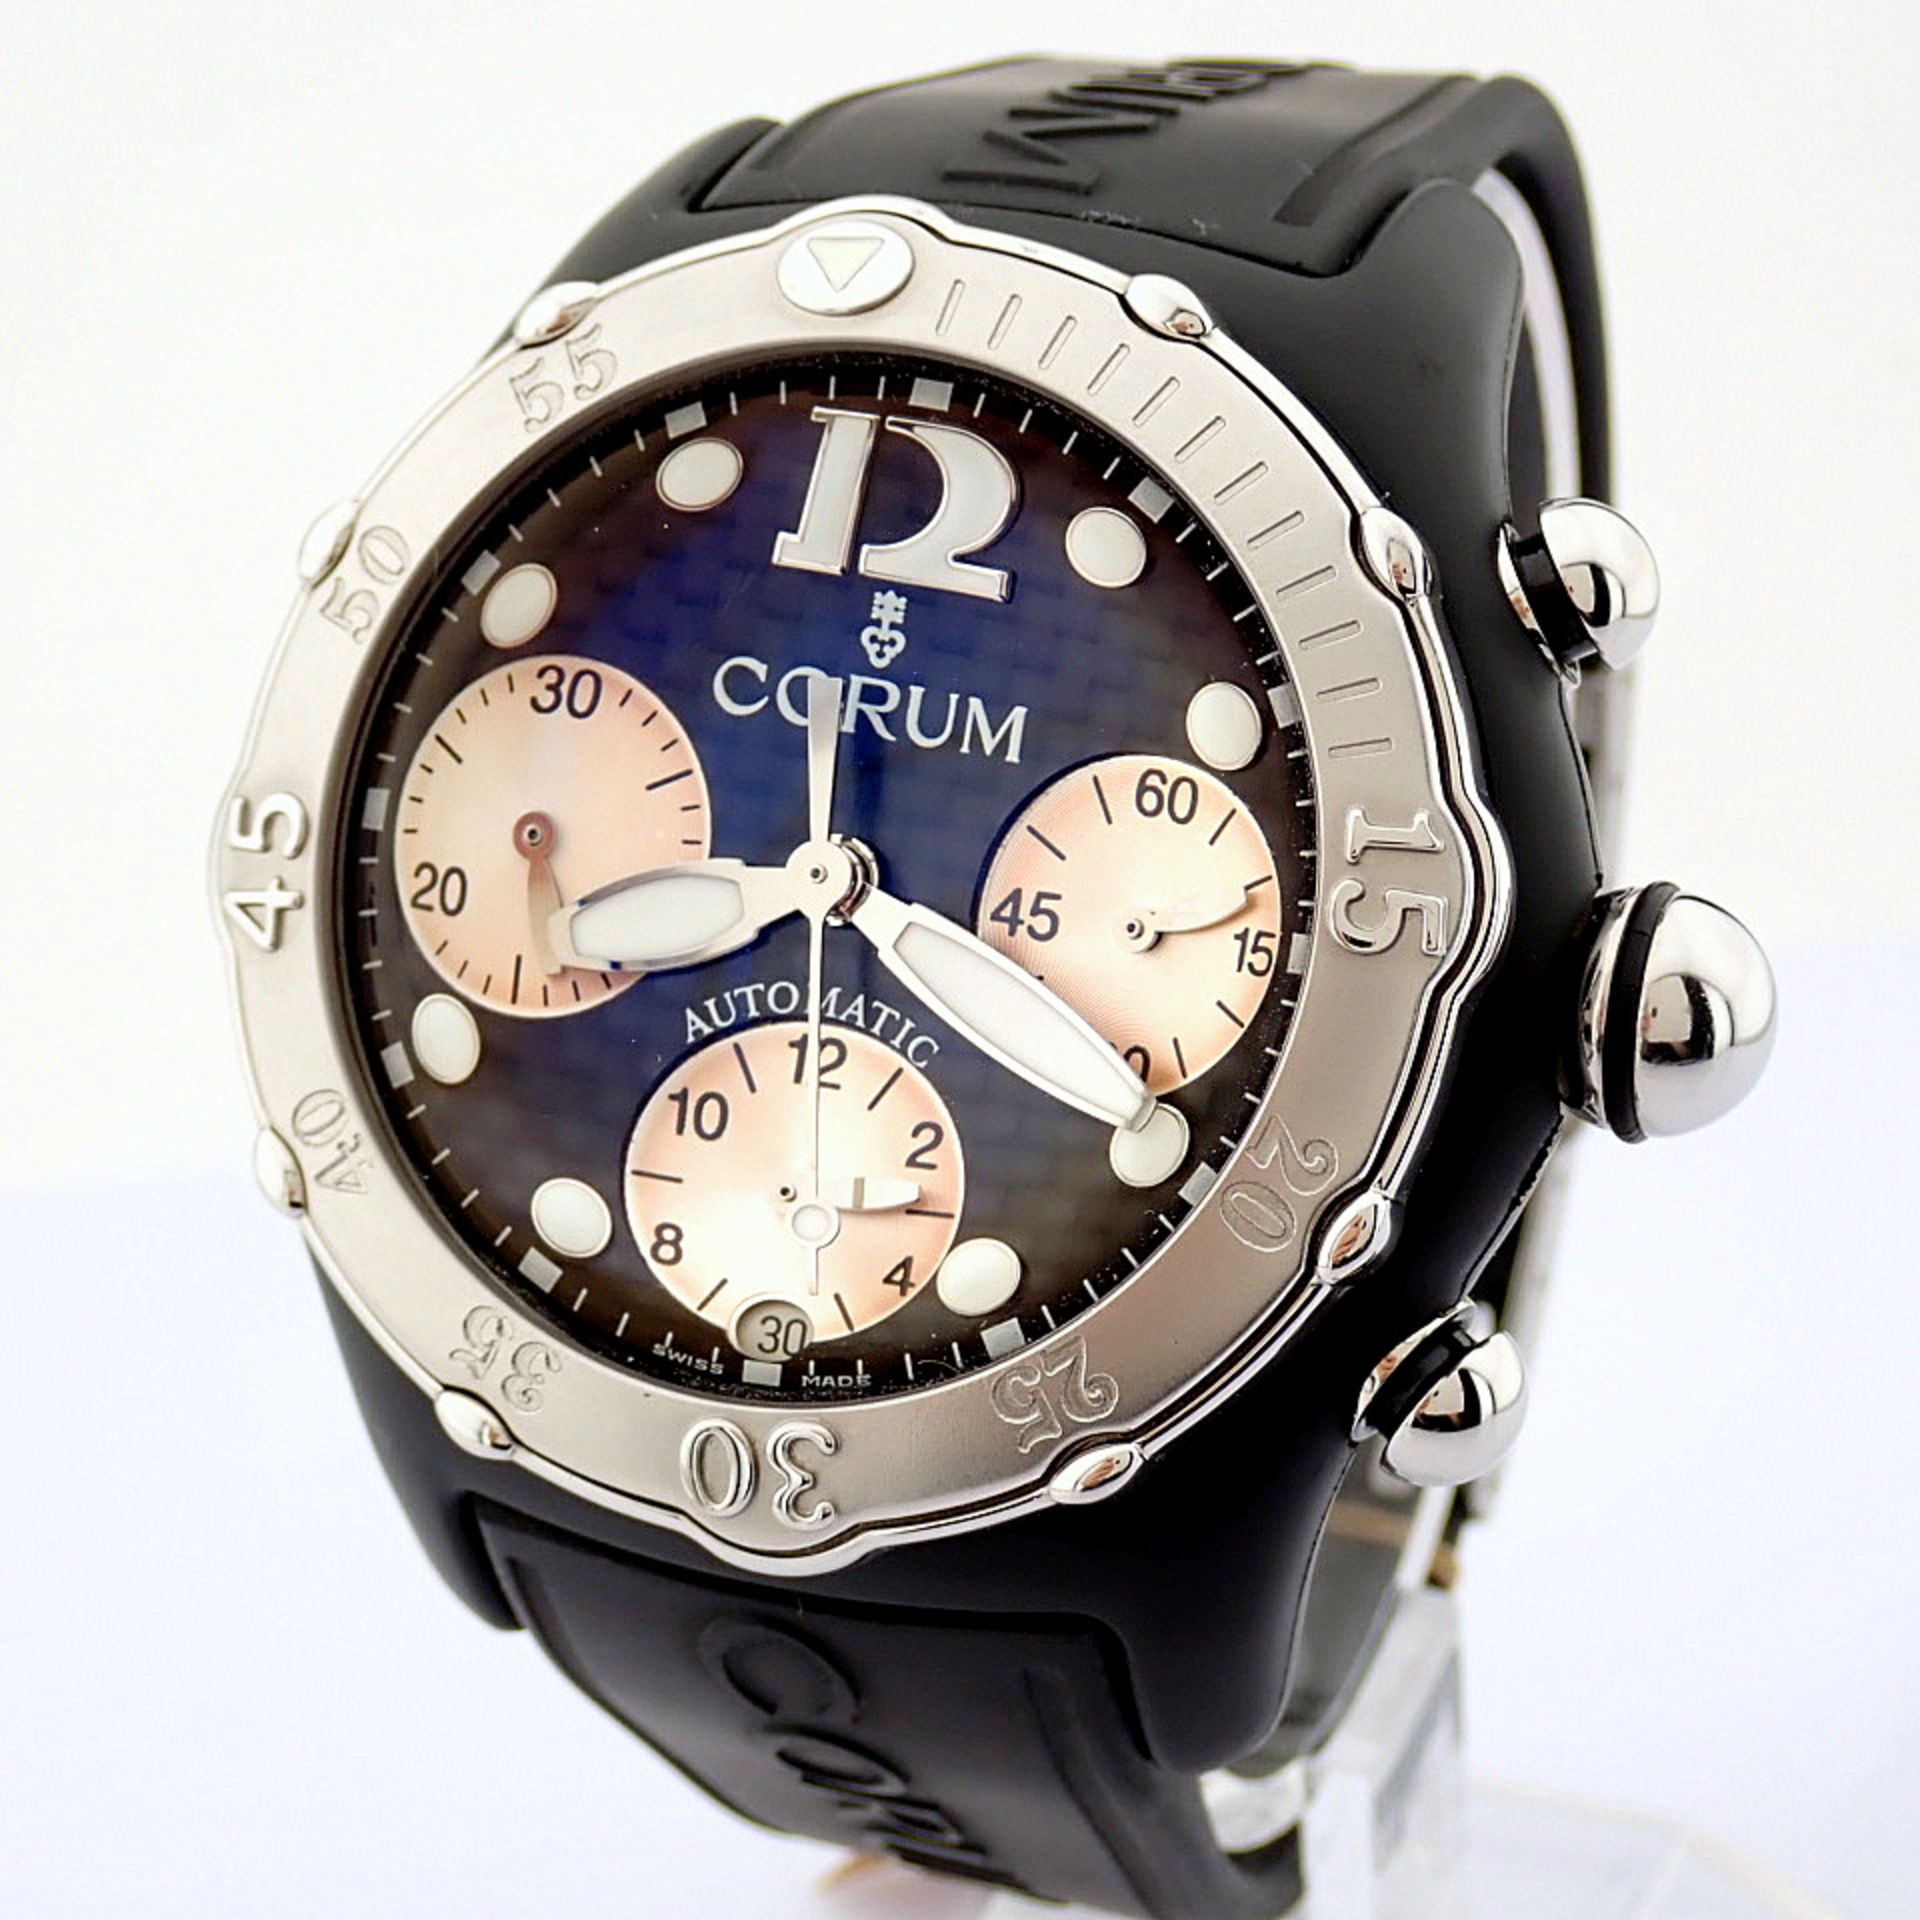 Corum / Midnight Chronograph Diver Taucher - Gentlmen's Steel Wrist Watch - Image 7 of 12